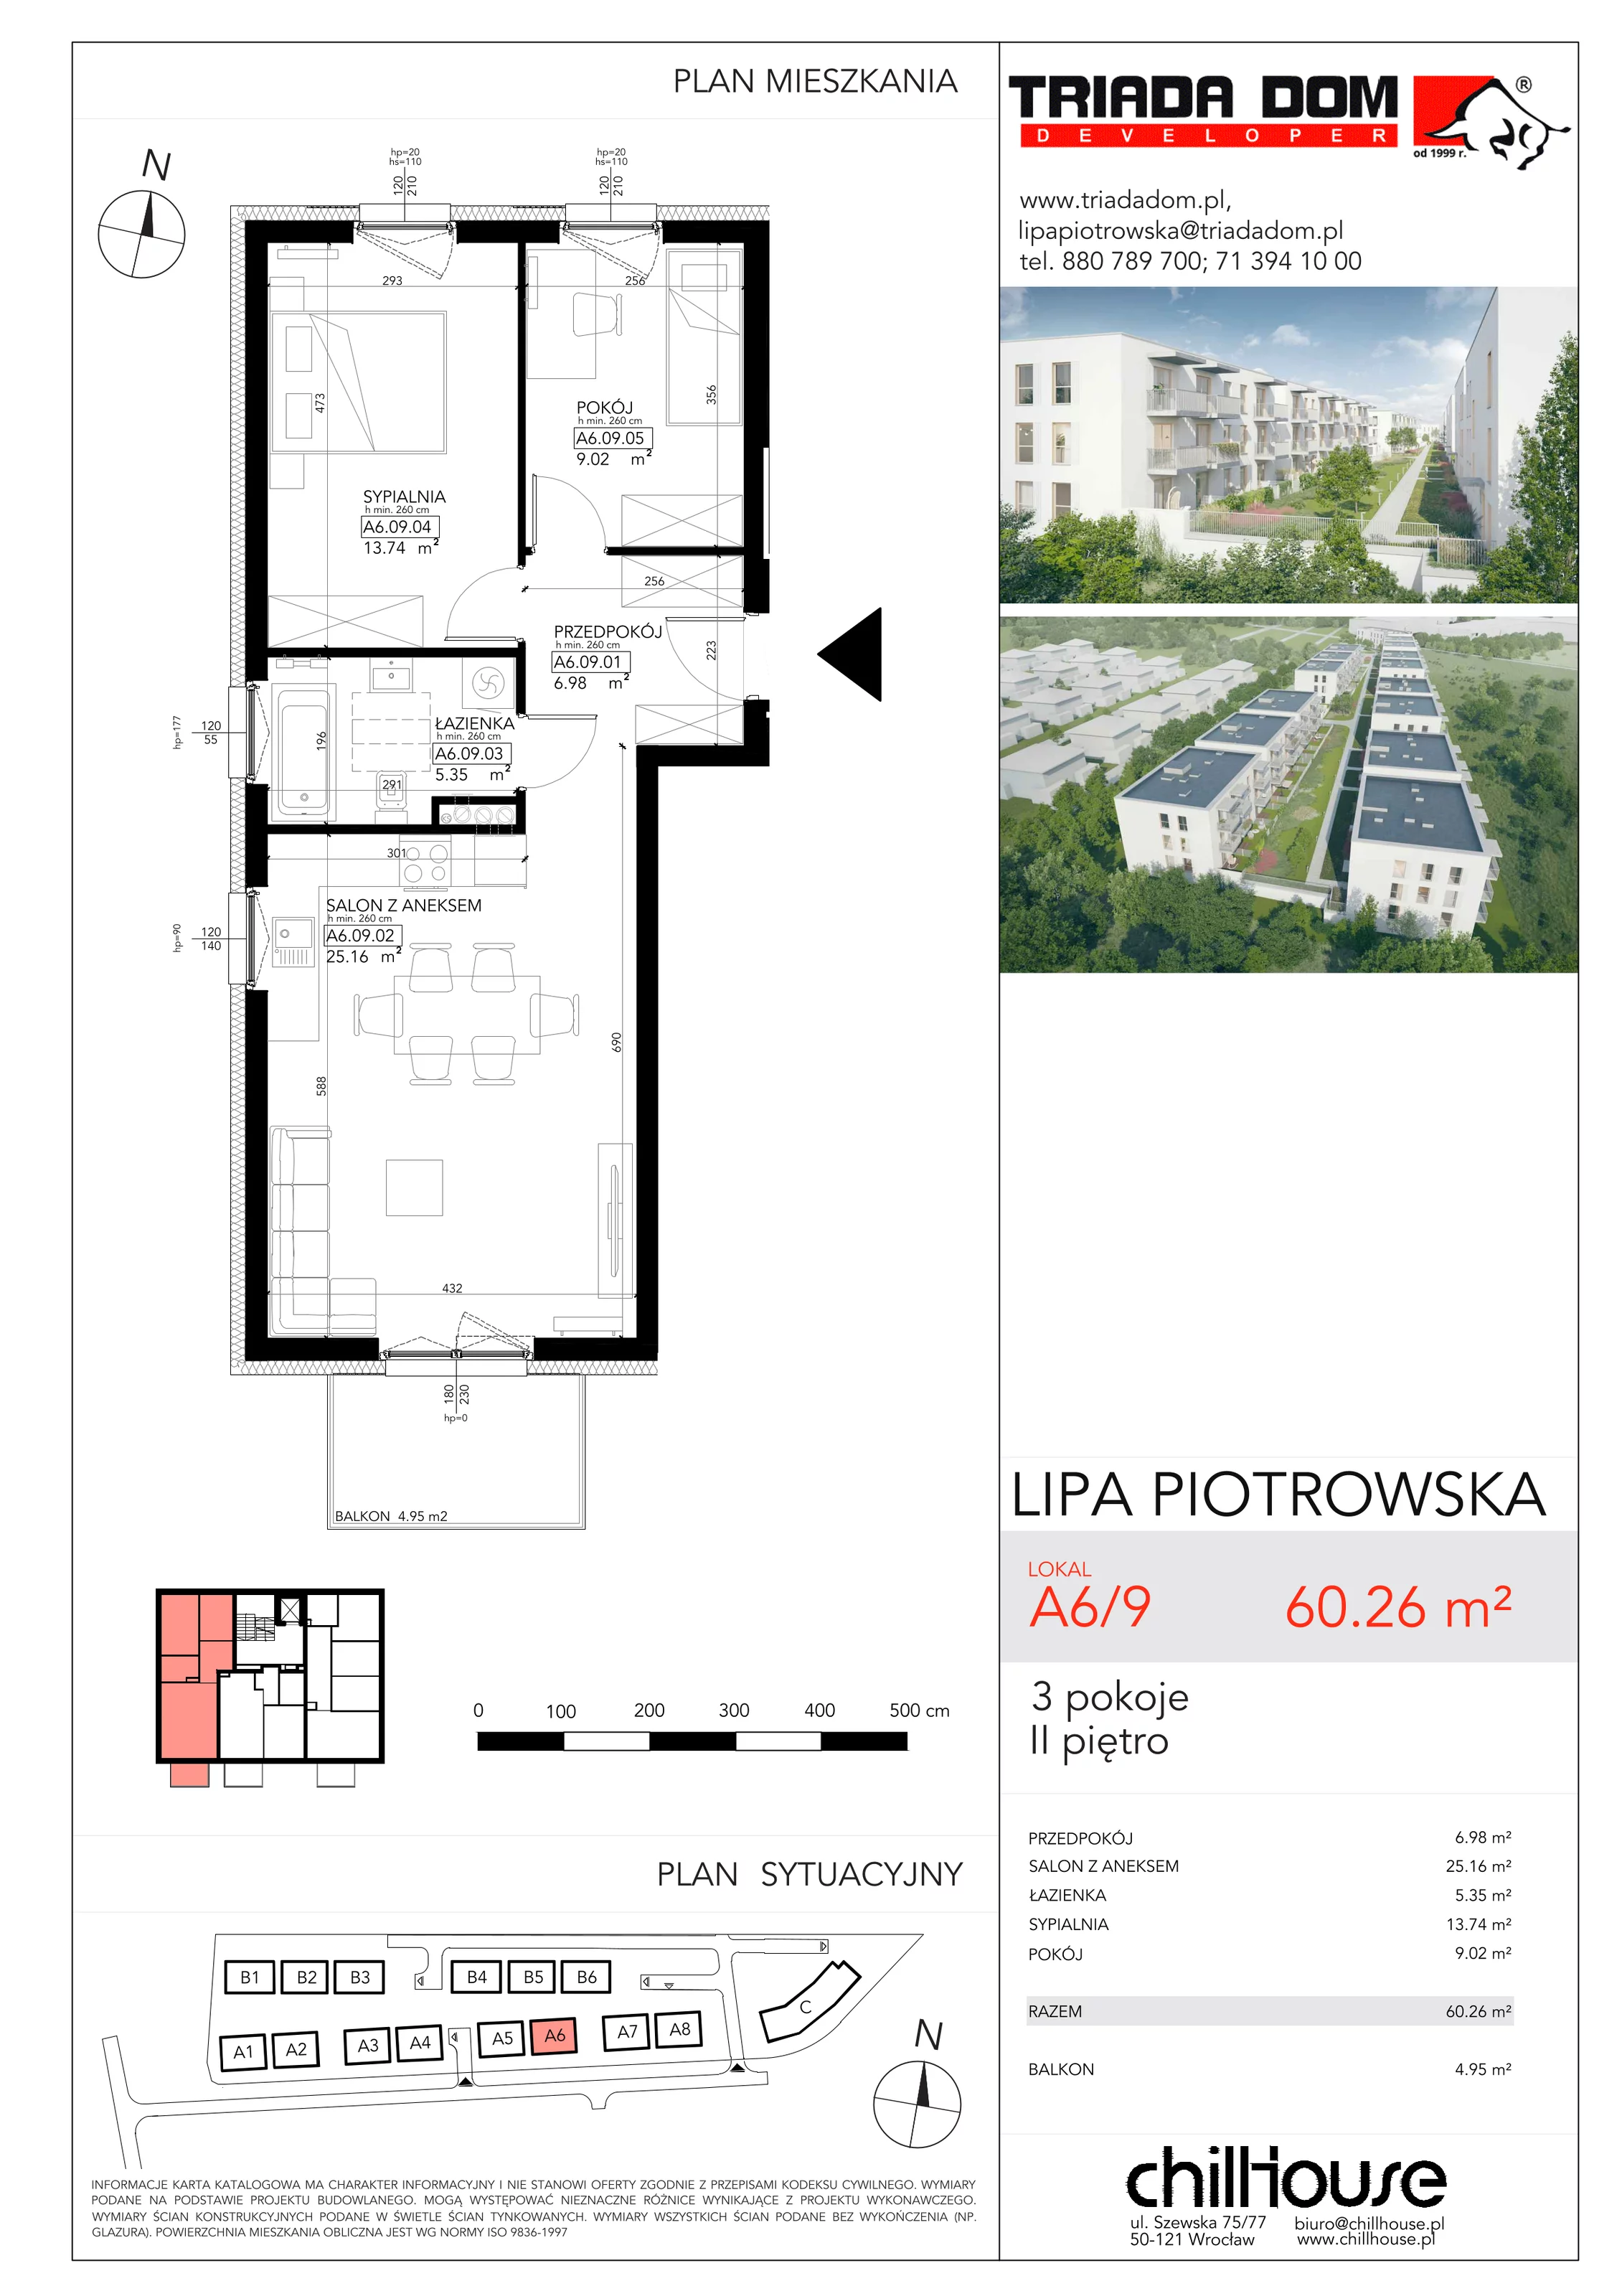 Mieszkanie 60,26 m², piętro 2, oferta nr A69, Lipa Piotrowska, Wrocław, Lipa Piotrowska, ul. Lawendowa / Melisowa